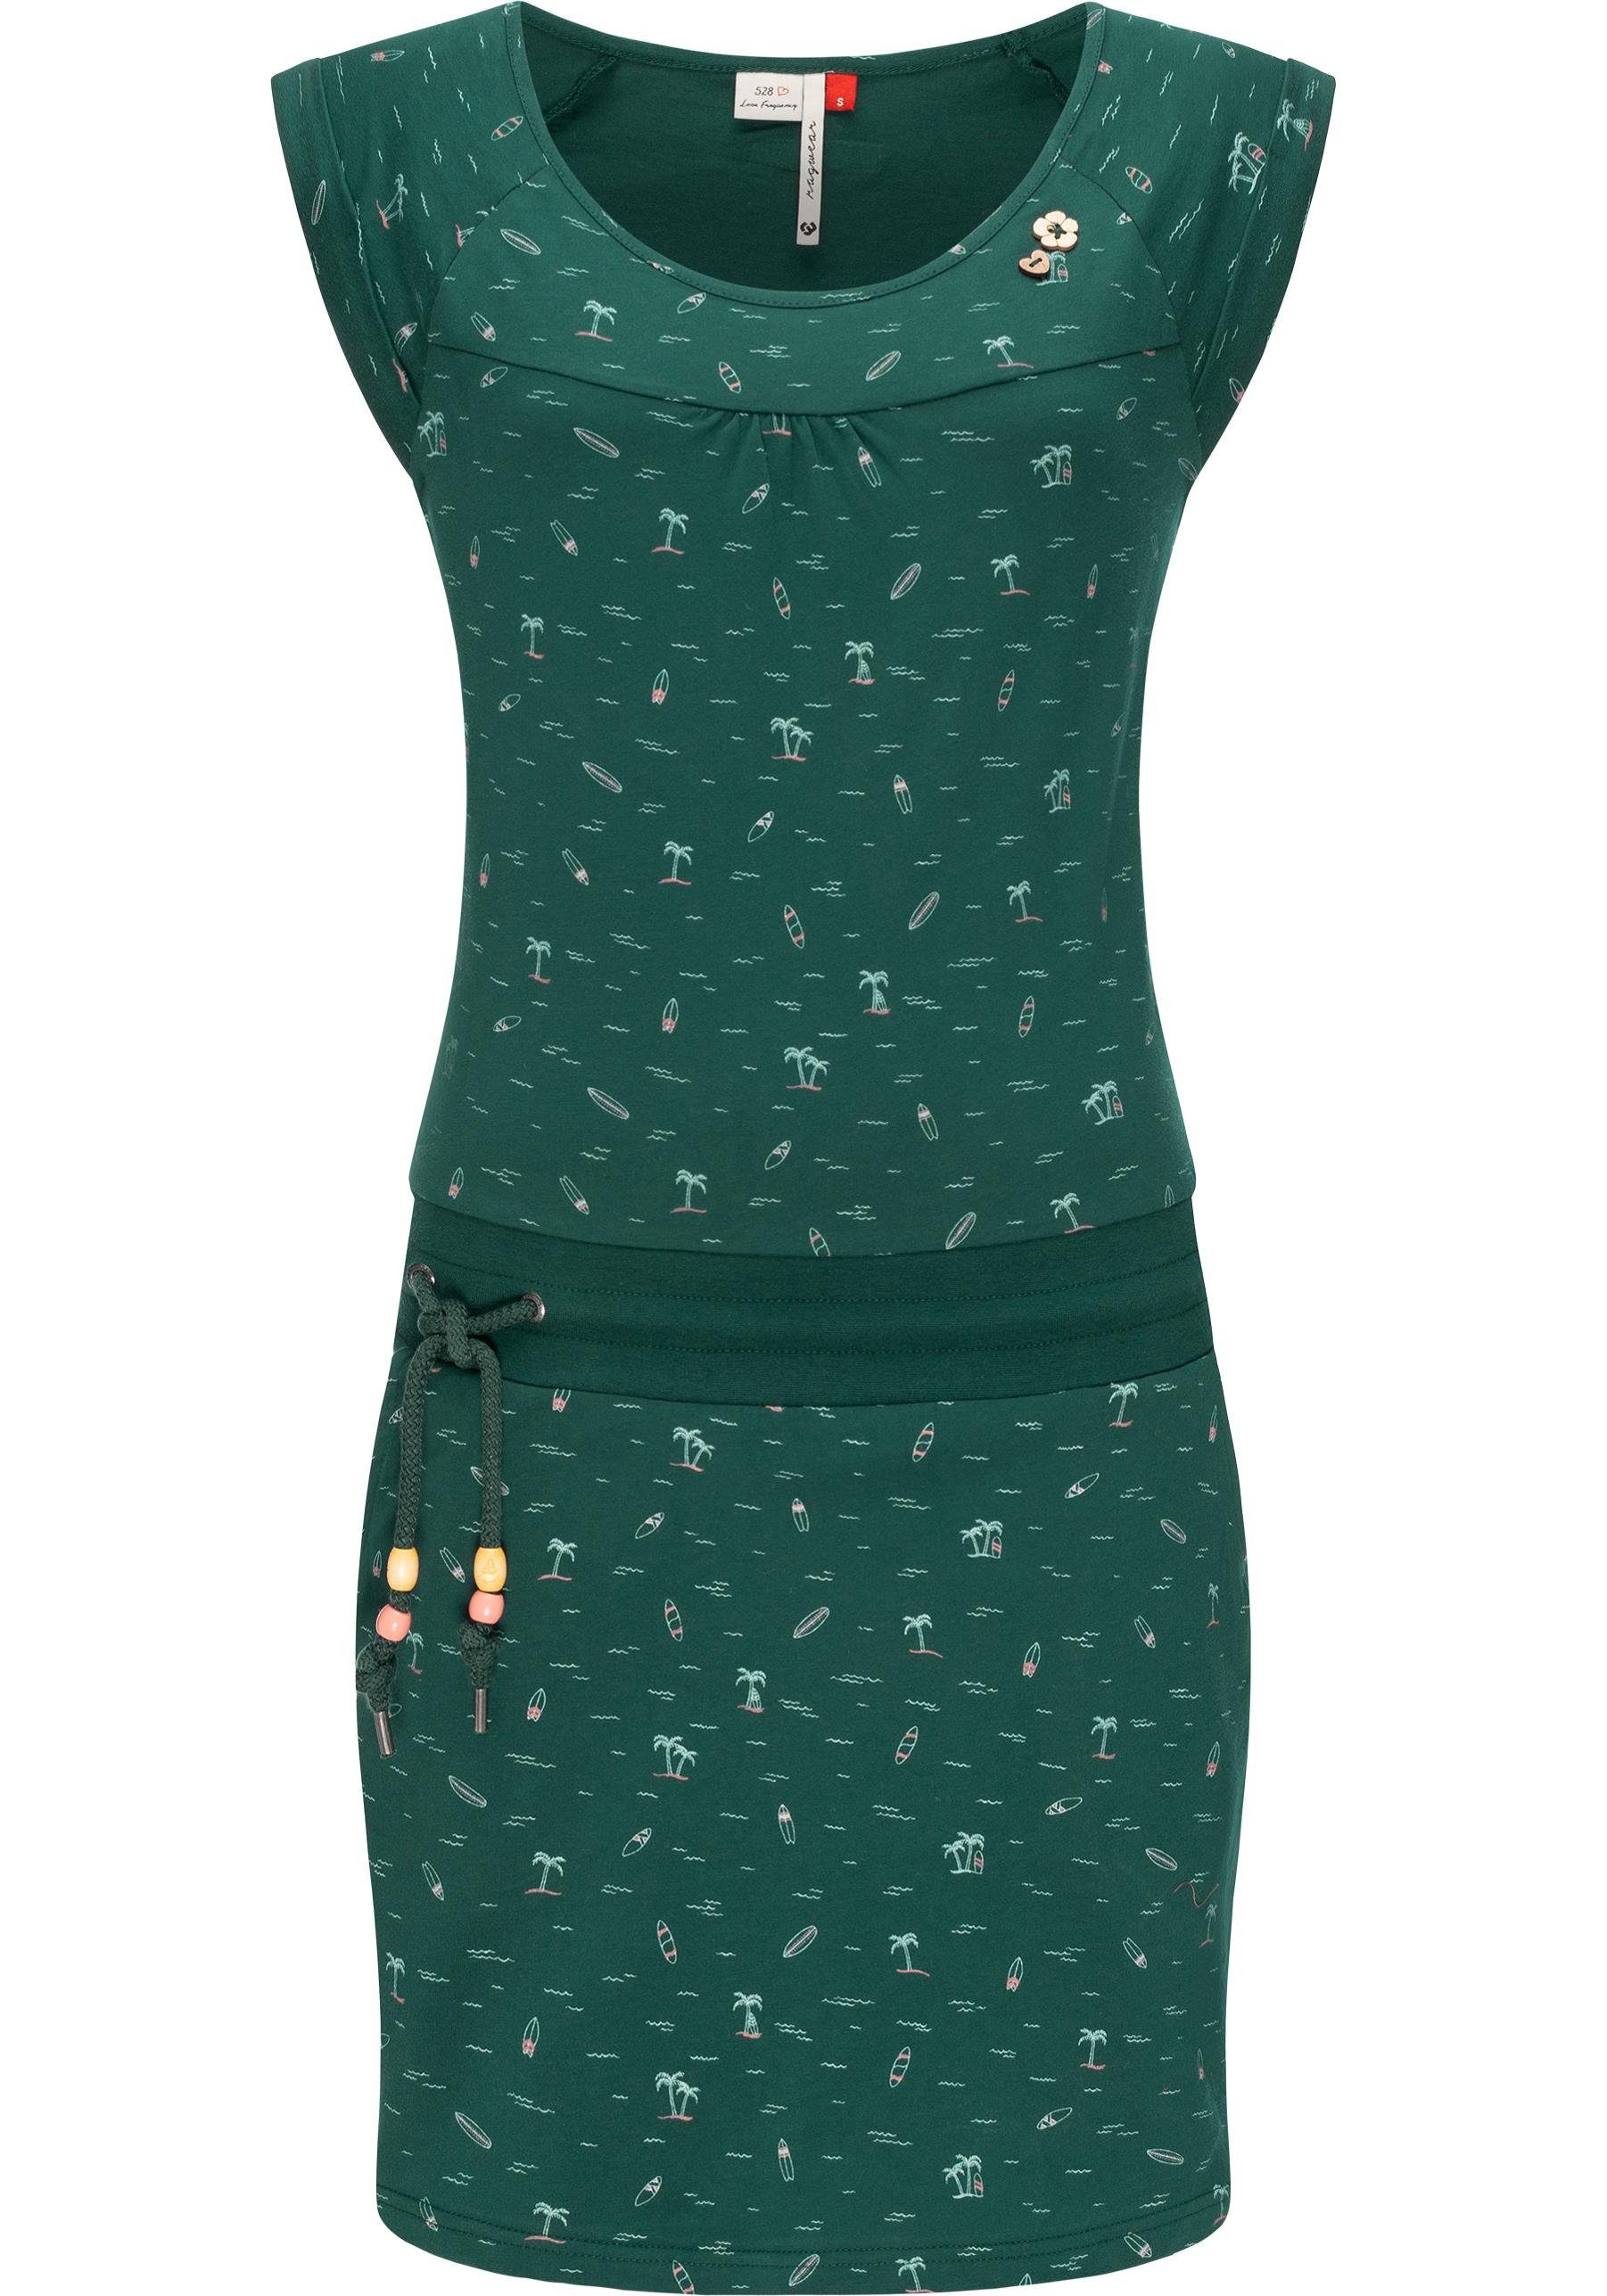 Ragwear Sommerkleid Penelope Baumwoll u. leichtes Verarbeitung Hochwertige Print, Kleid 100% vegan hergestellt Qualität, mit